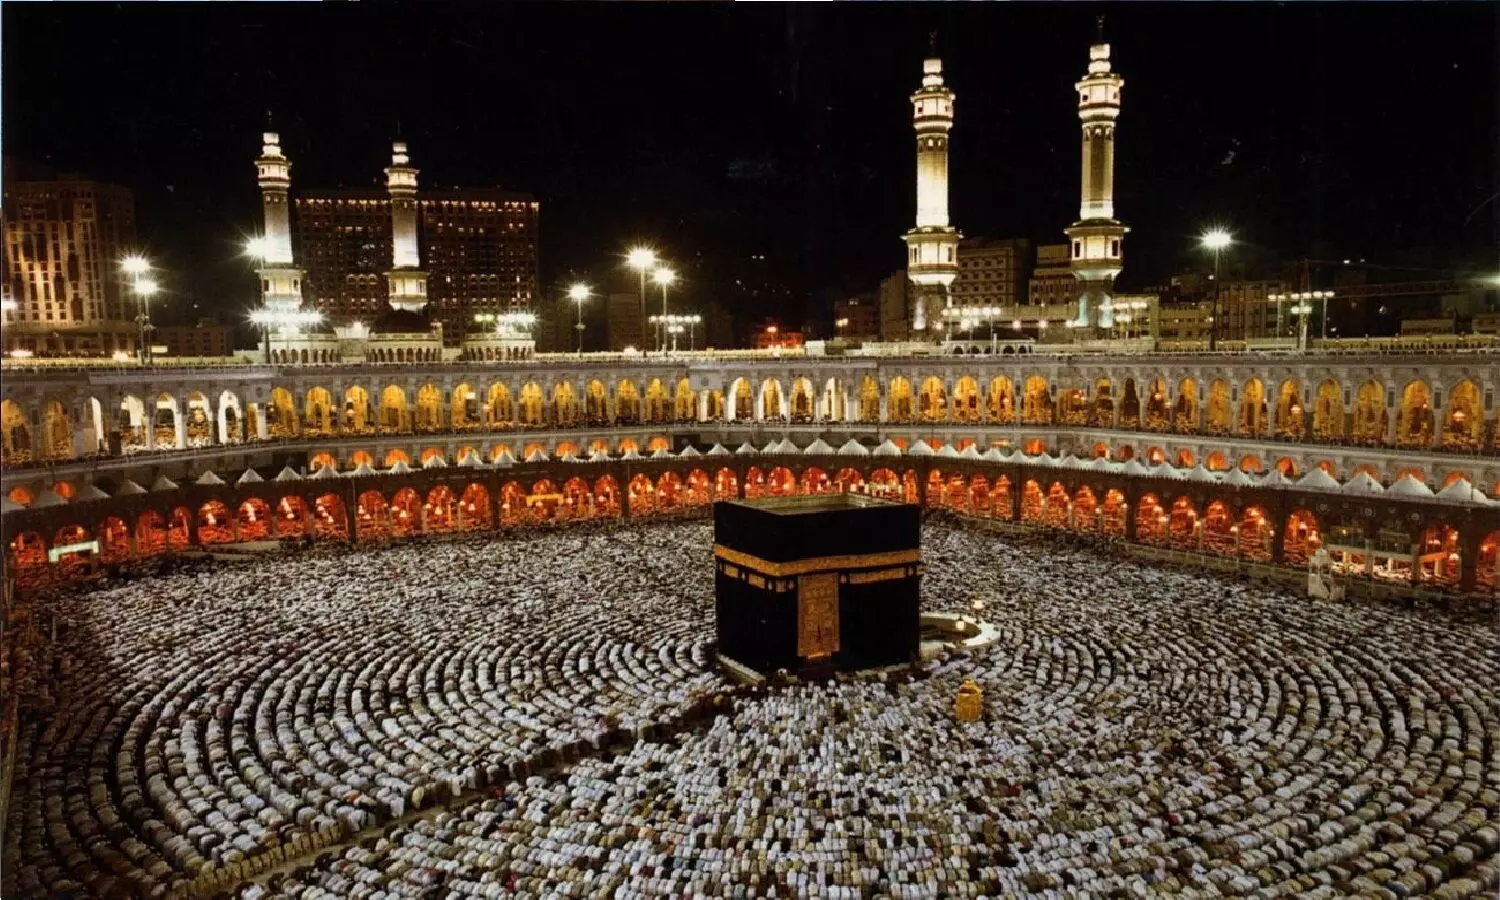 अगर कोई गैर-मुस्लिम मक्का में घुस जाए तो उसके साथ क्या होगा?